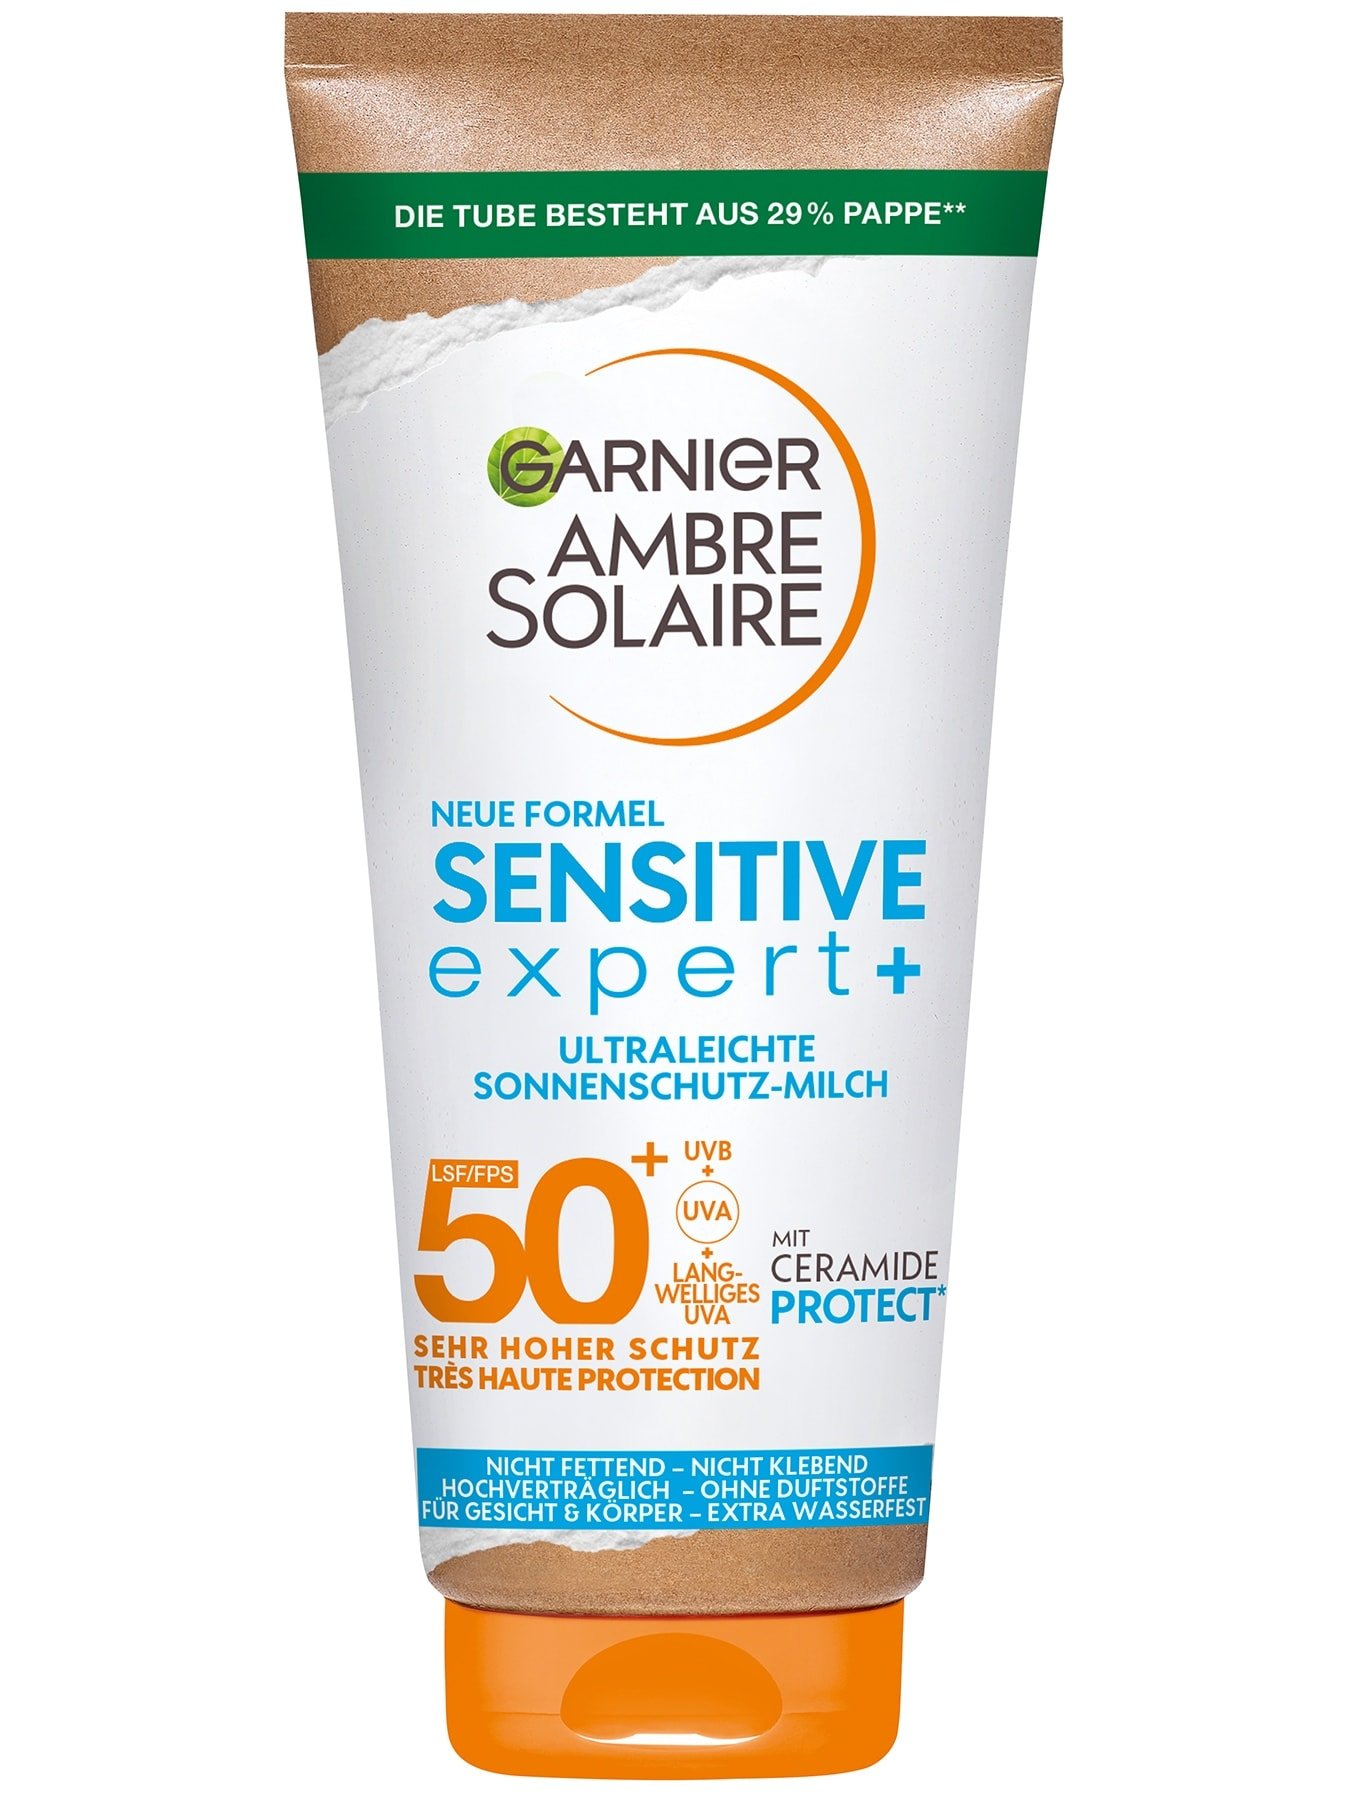 Ambre Solaire sensitive expert+ Sonnenschutz-Milch LSF 50+ - Produktabbildung